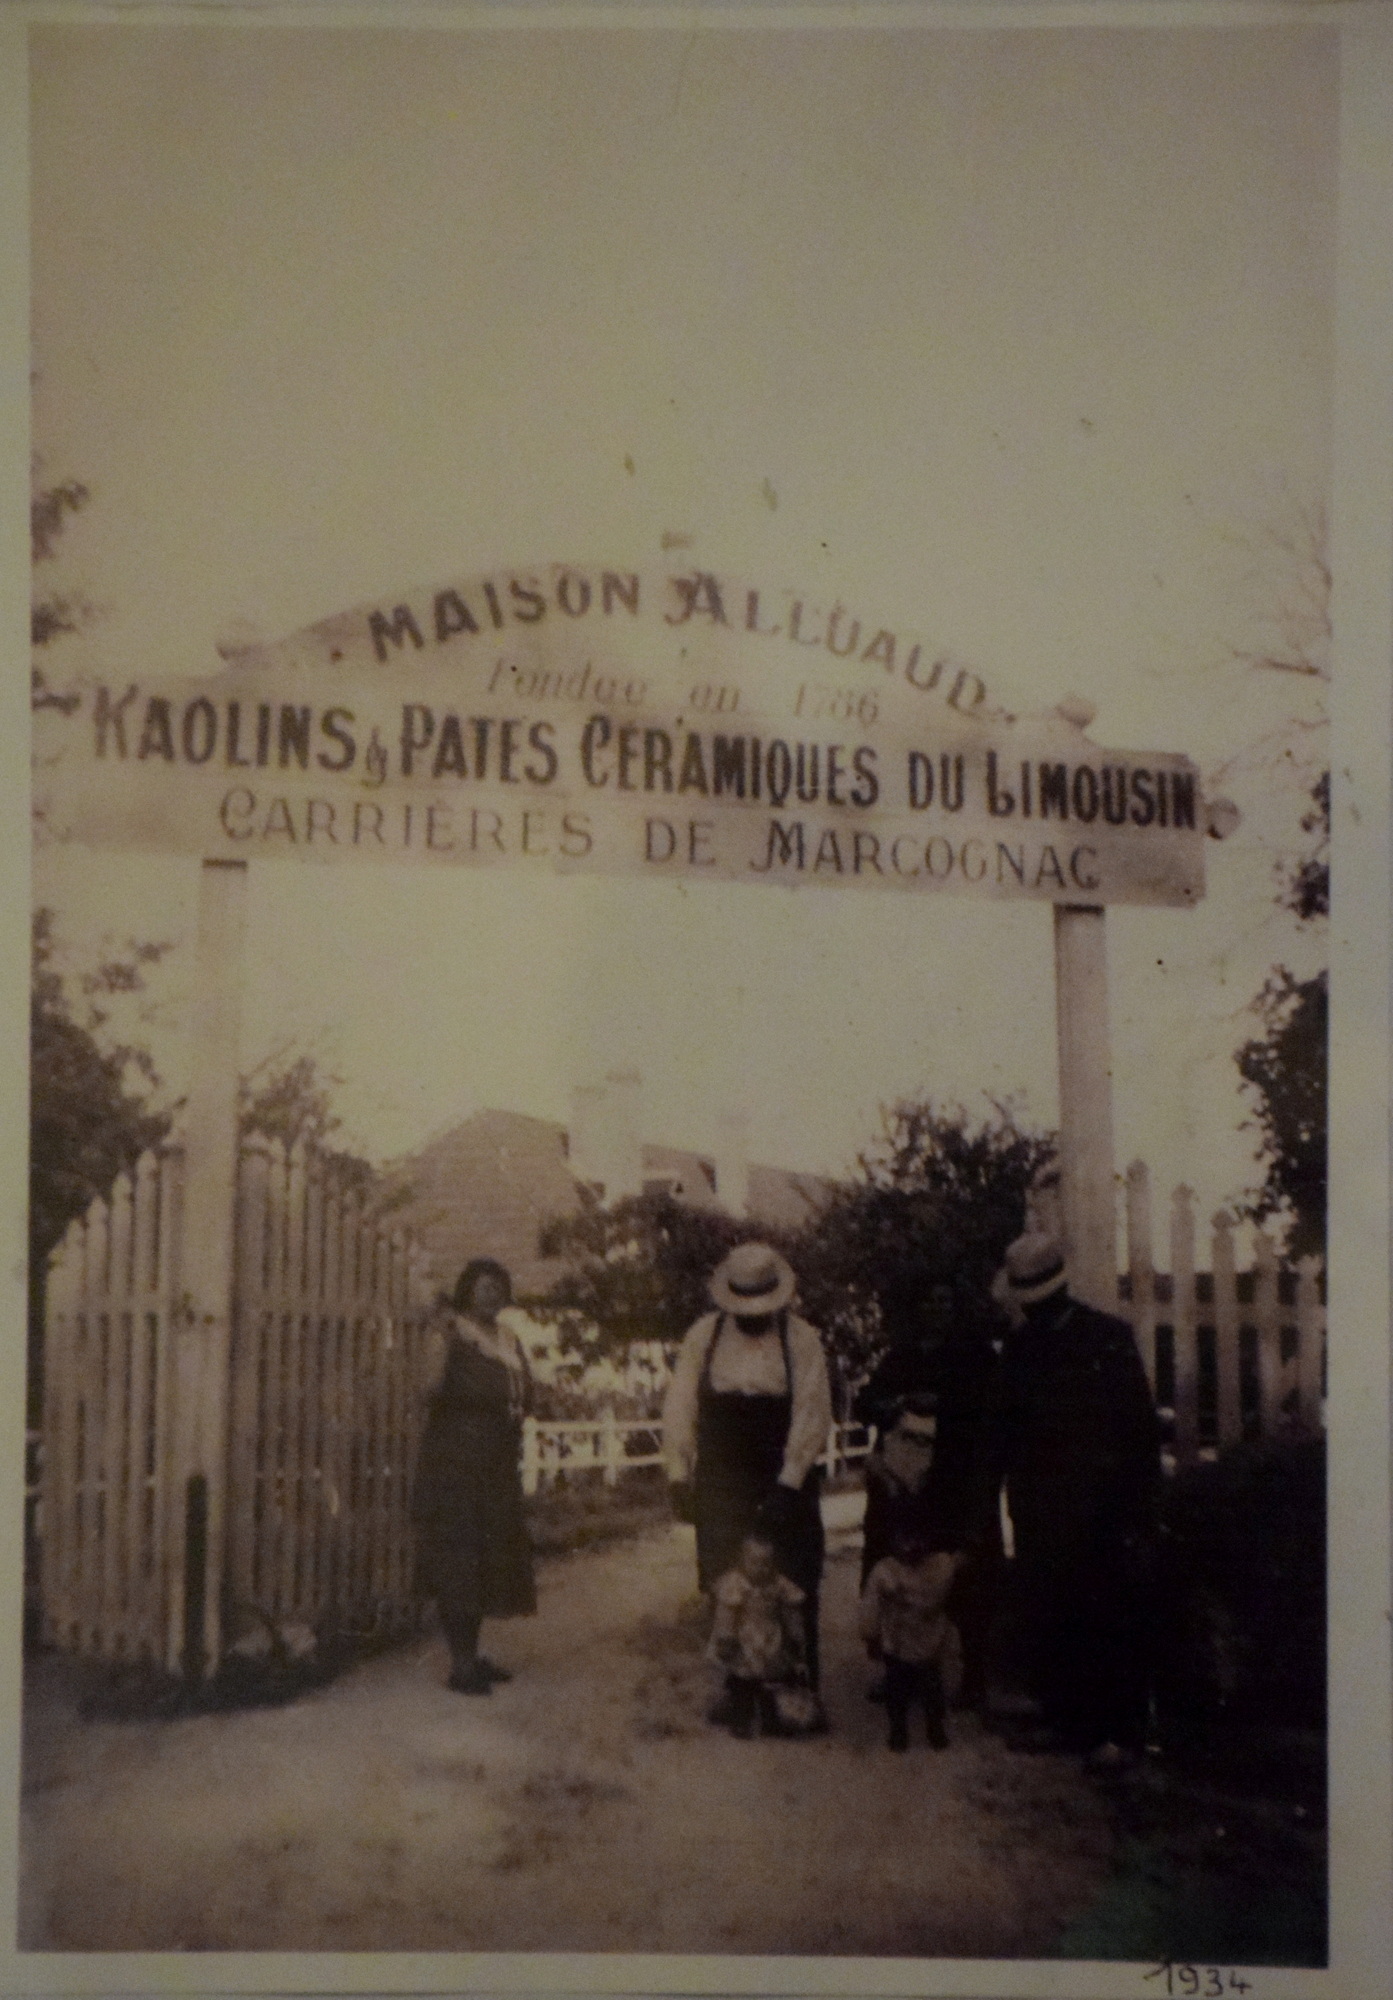 Entrée du site de Marcognac, photograhie datée 1934.